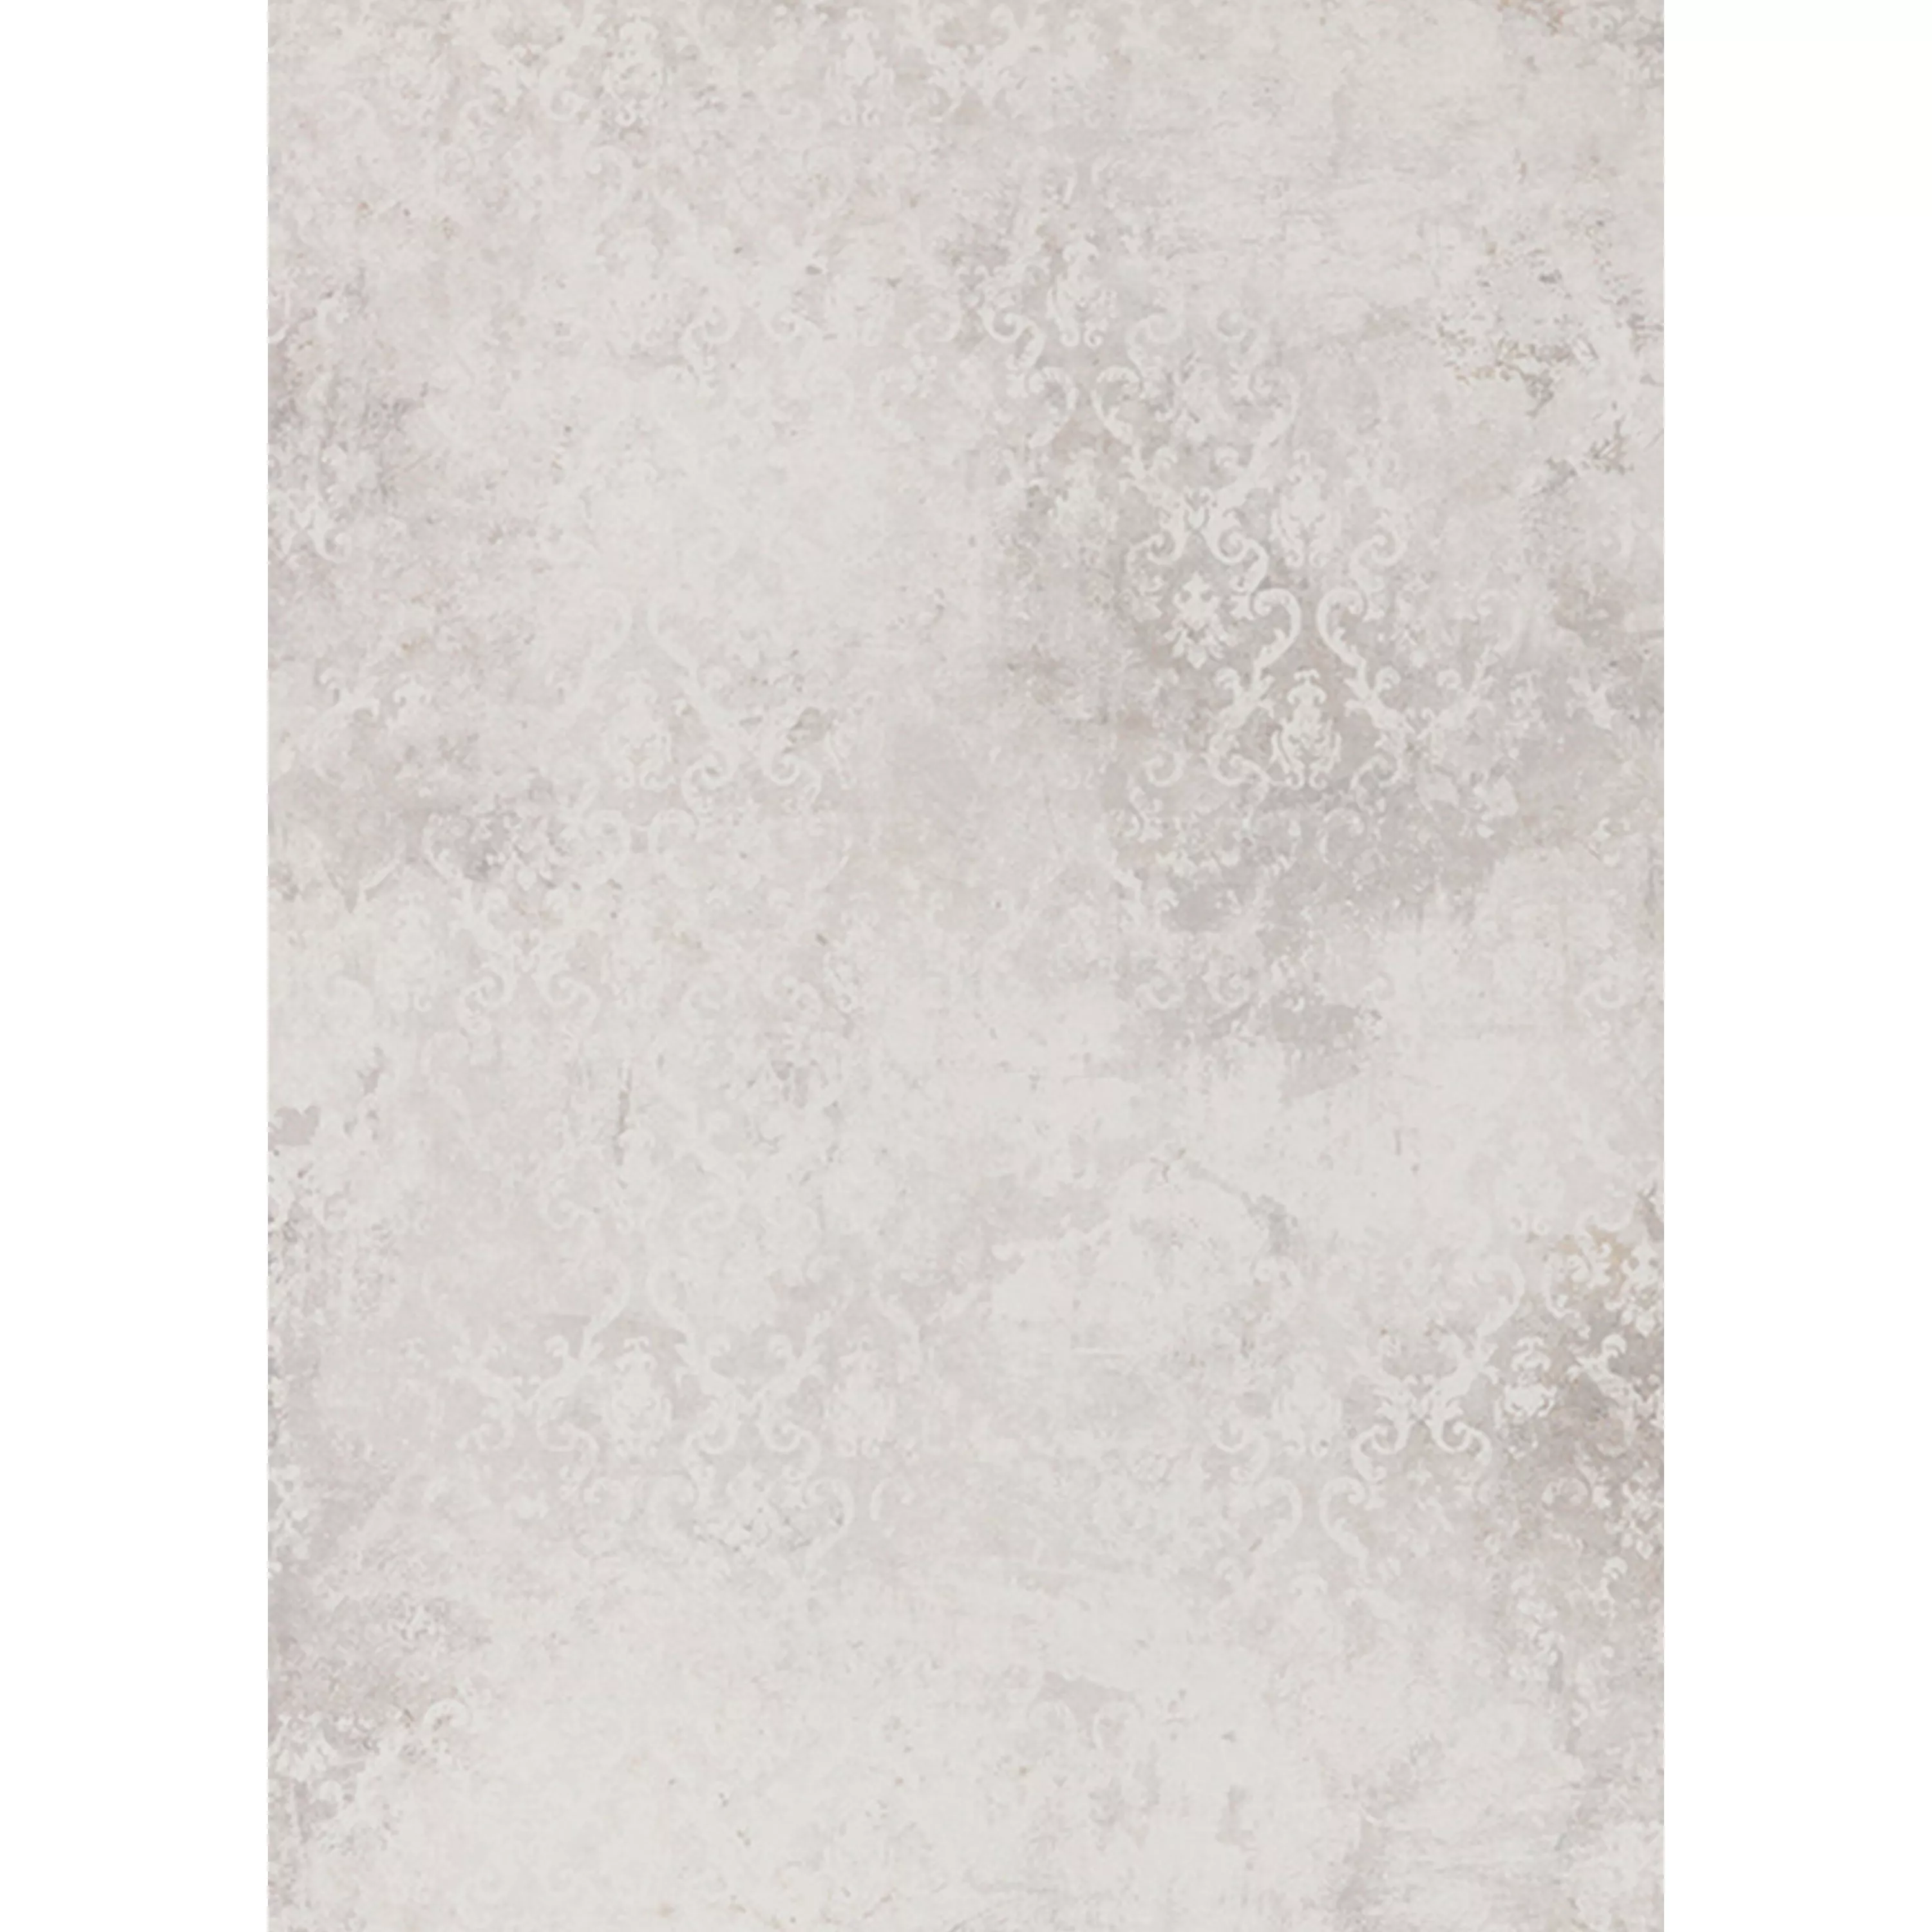 Πλακάκια Δαπέδου Poetic Πέτρινη Όψη R10/A Ασπρο Decor 60x120cm